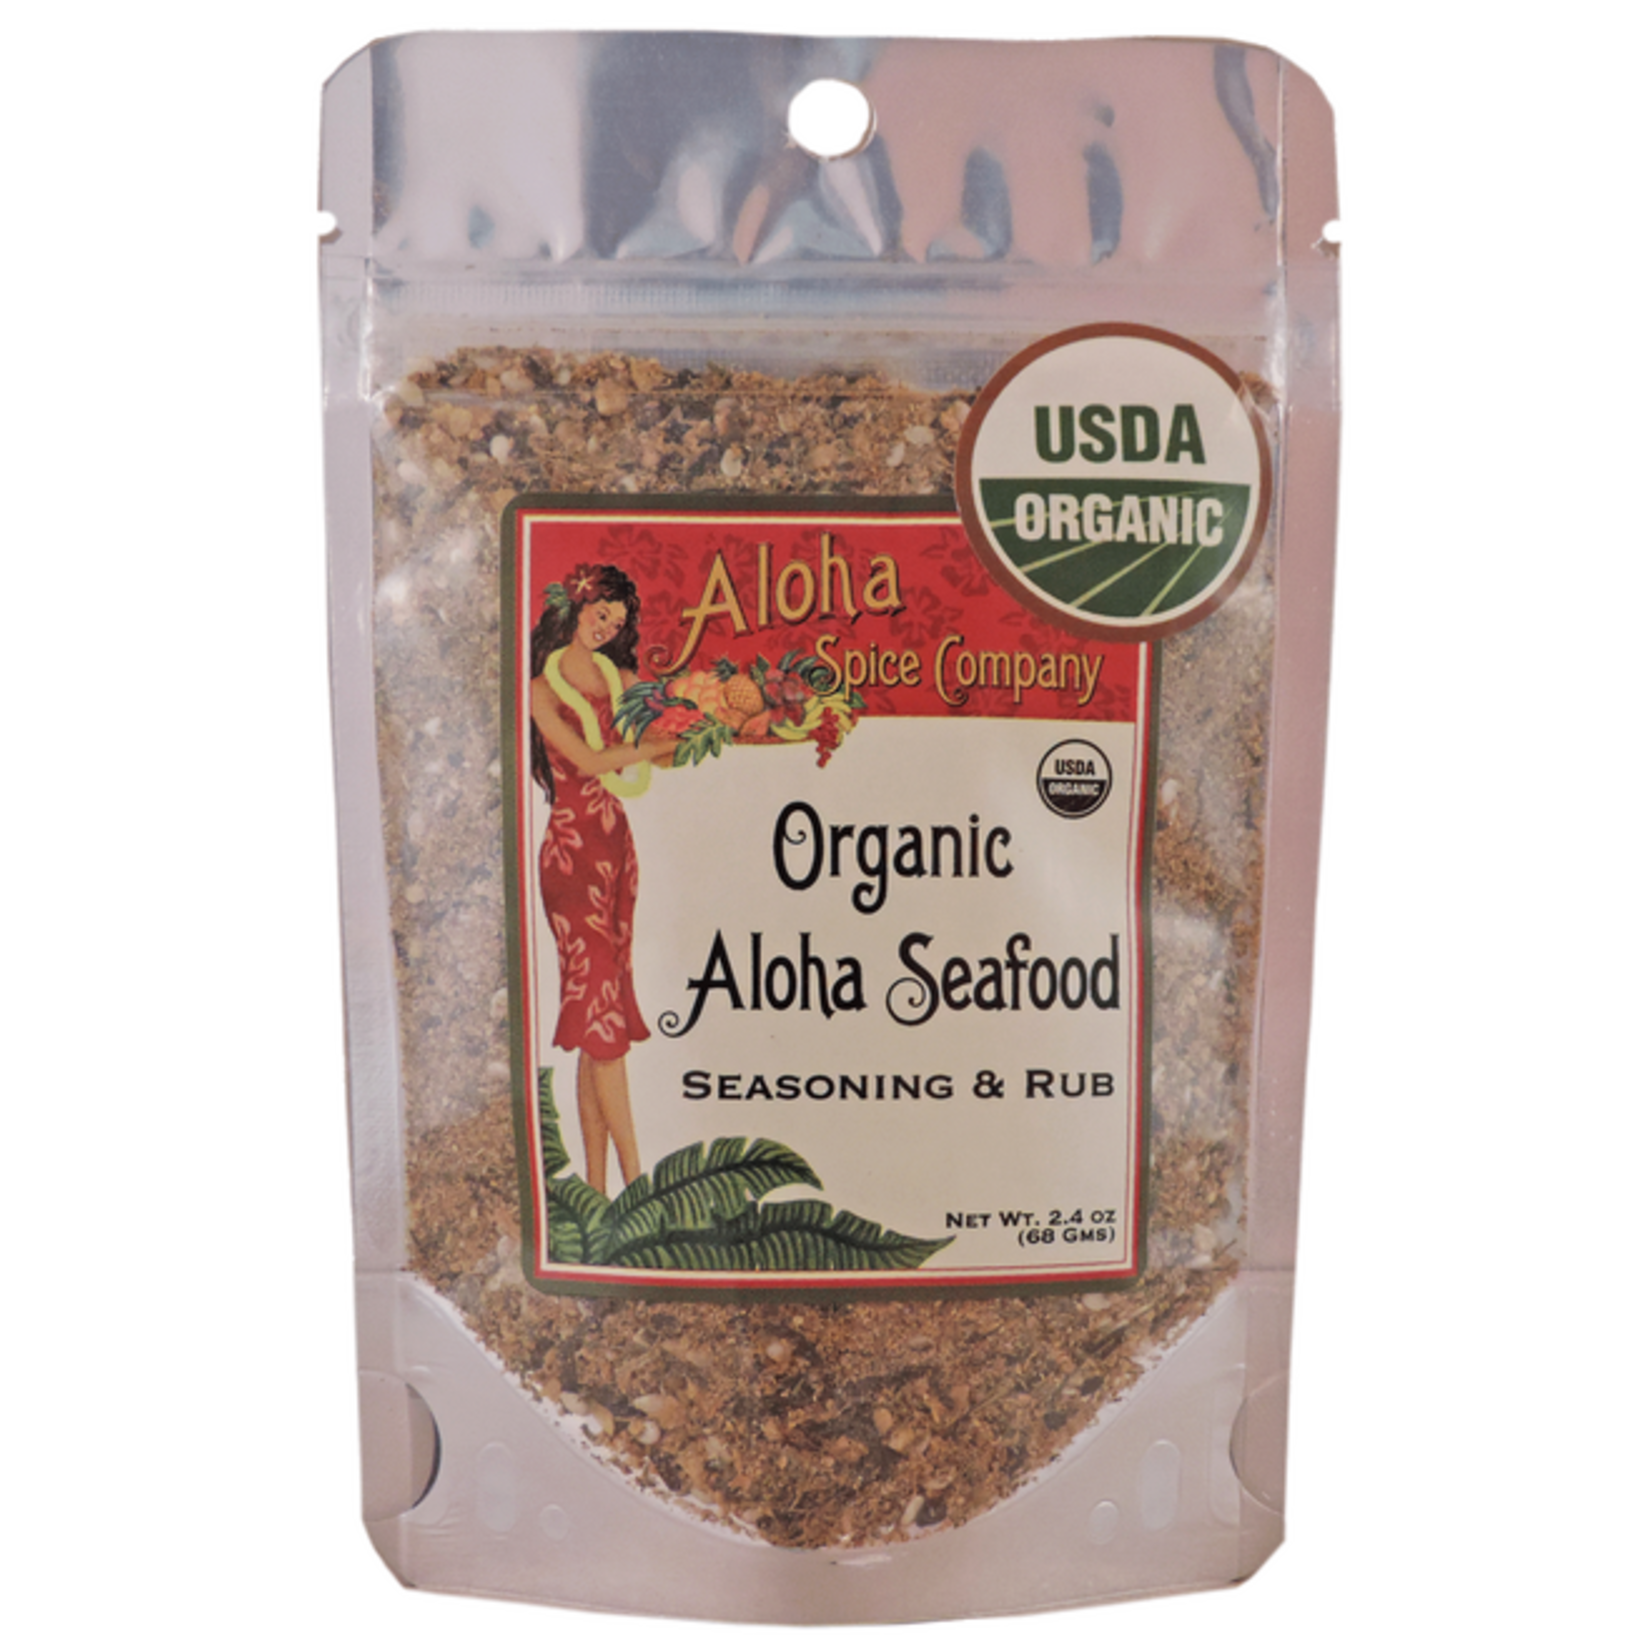 Aloha Spice Co. Organic Aloha Seafood Seasoning & Rub Bag